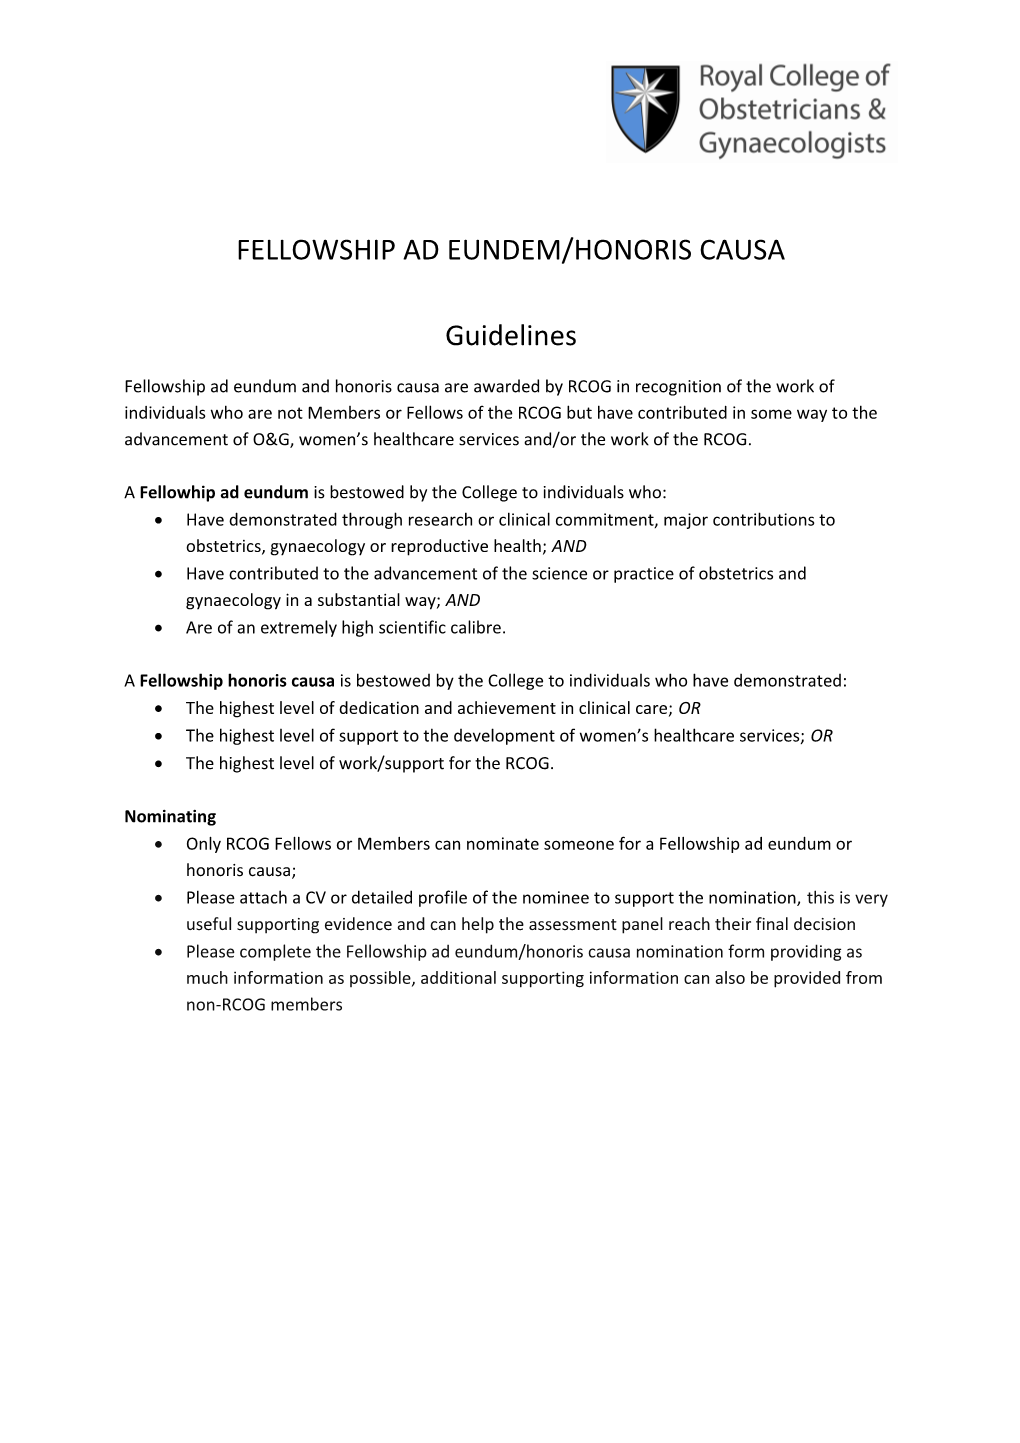 Fellowship Ad Eundem/Honoris Causa